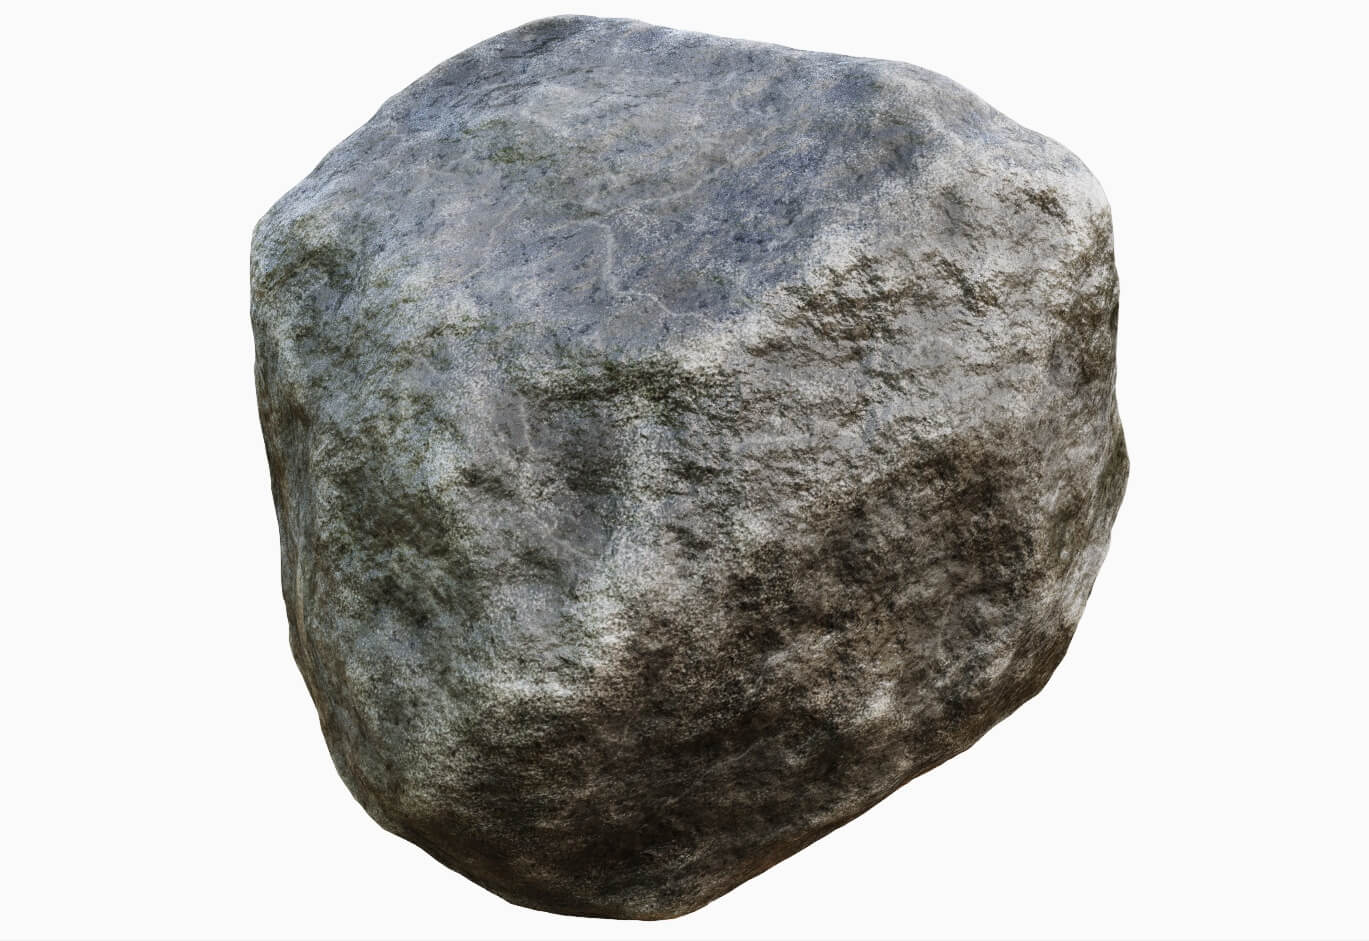 Rock Materials